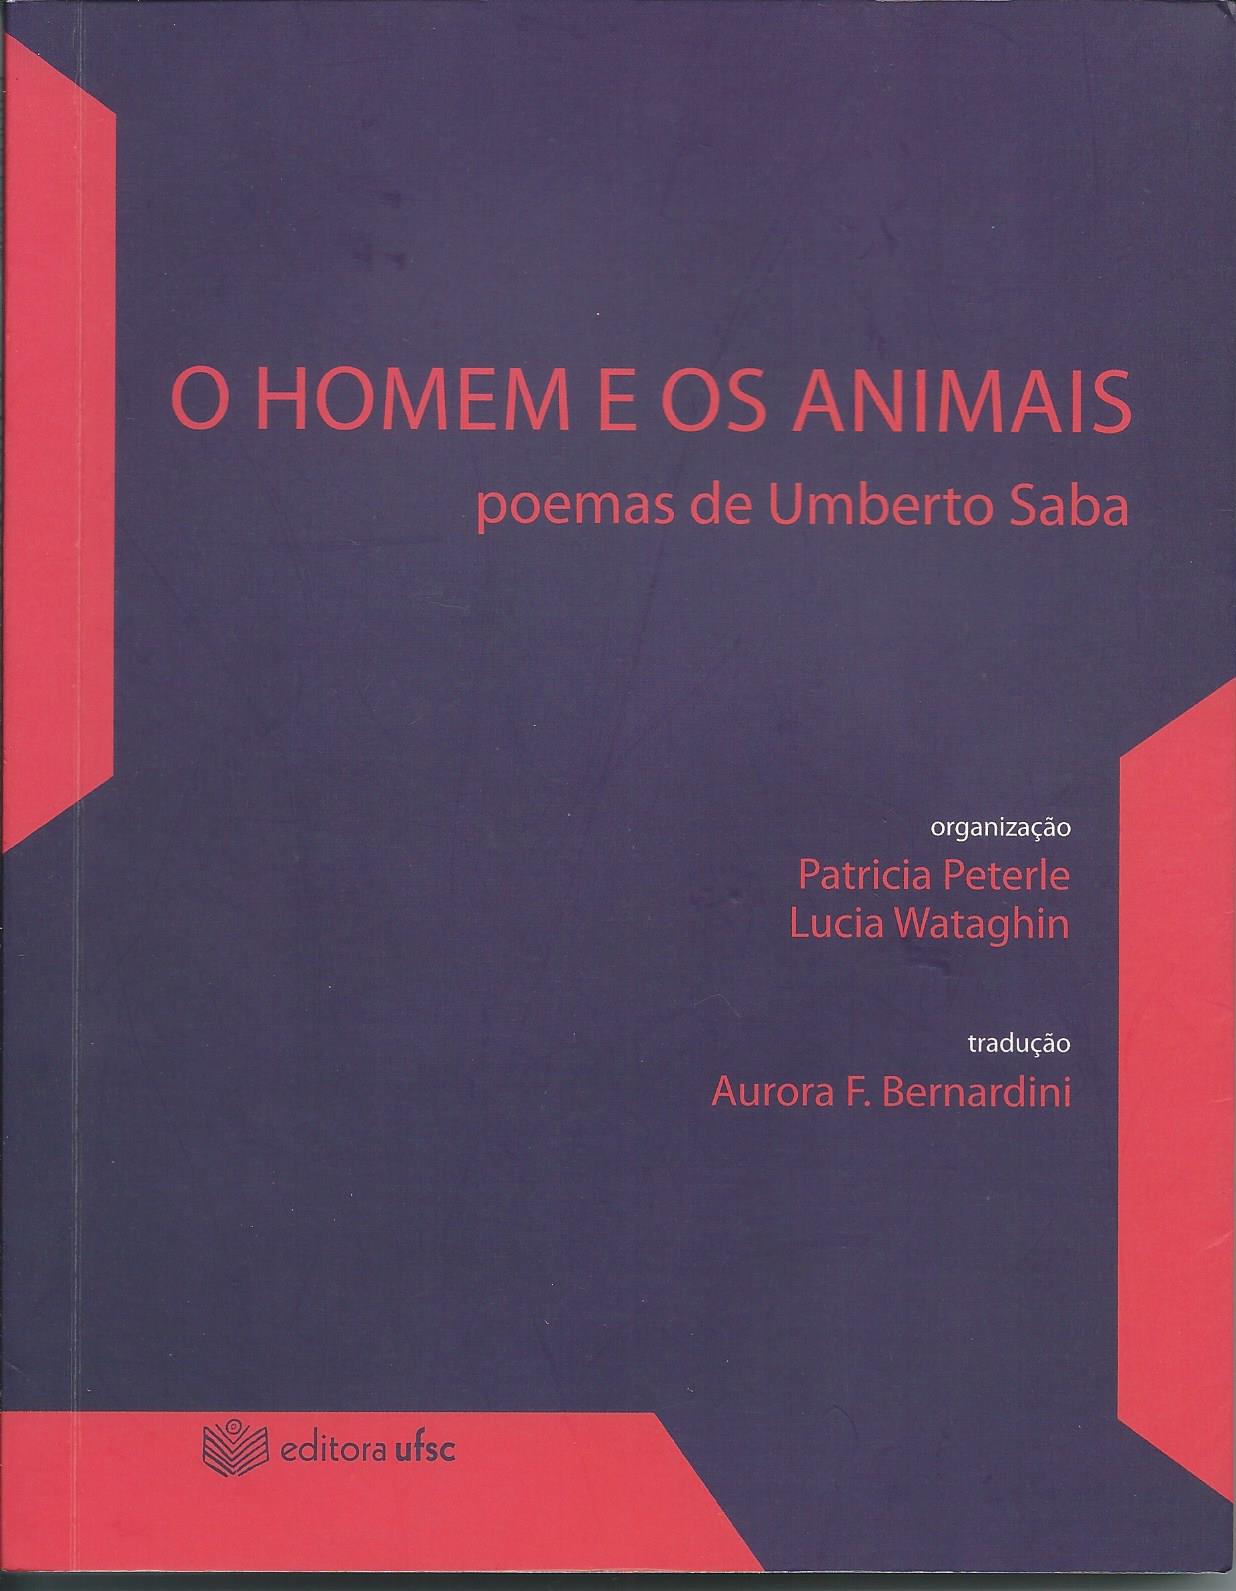 https://www.literaturabrasileira.ufsc.br/_images/obras/o_homem_e_os_animais_2014_ok.jpg